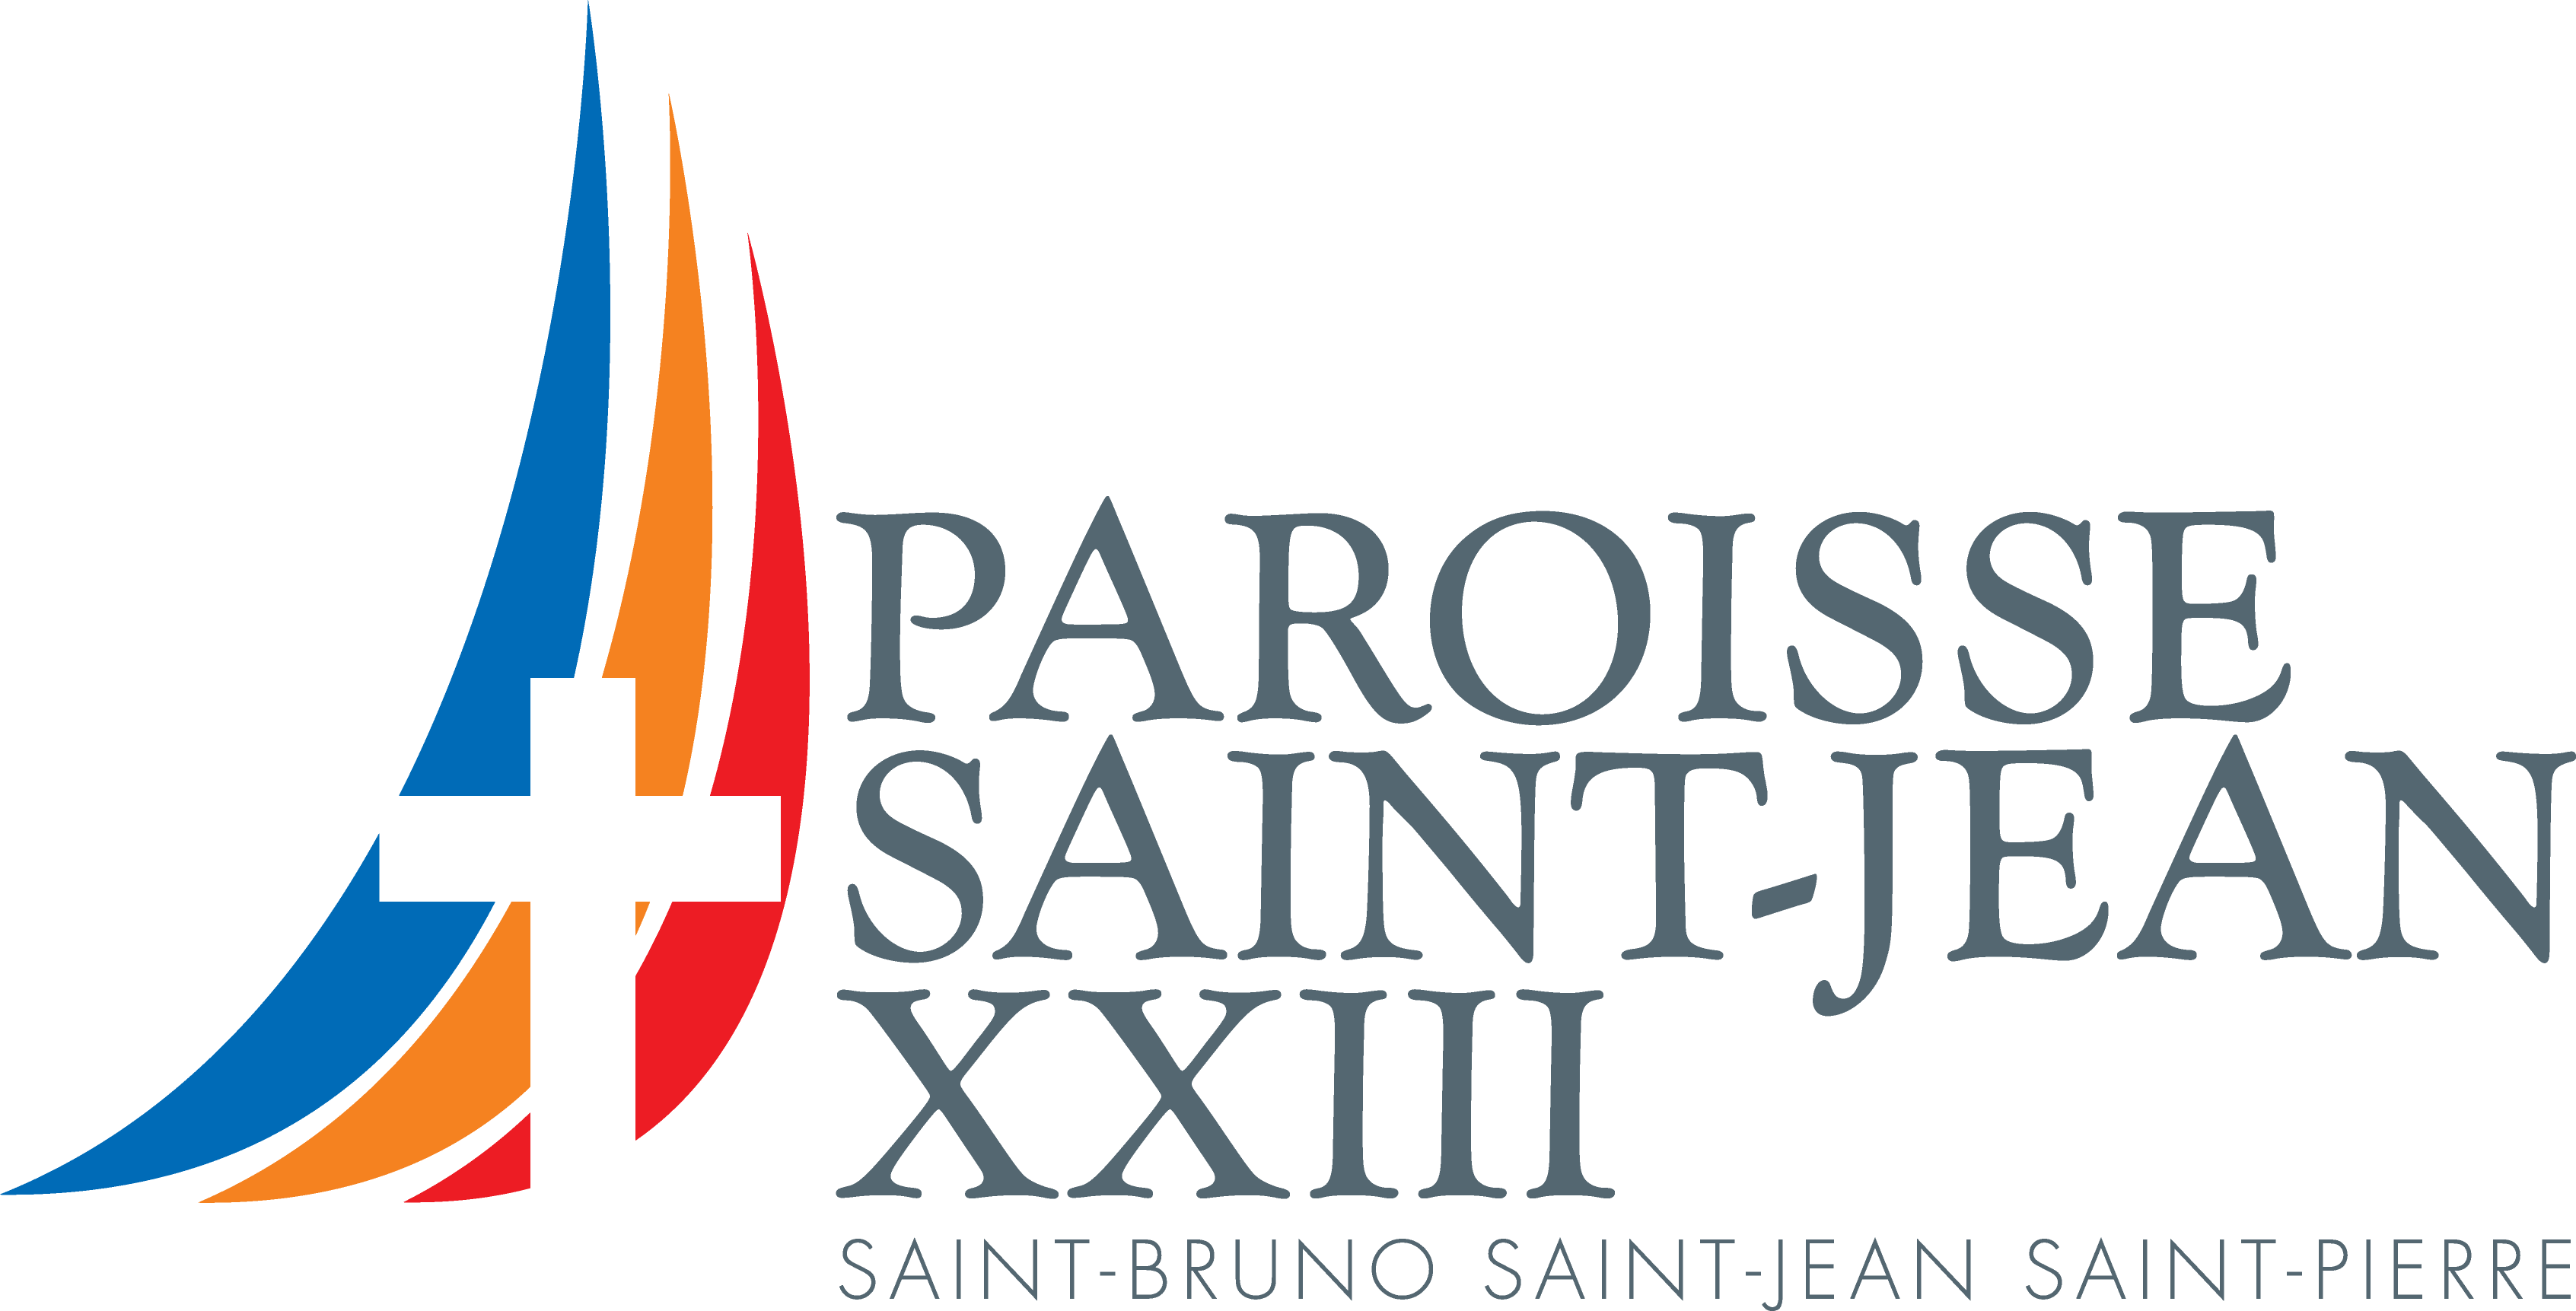 Paroisse Saint Jean XXIII